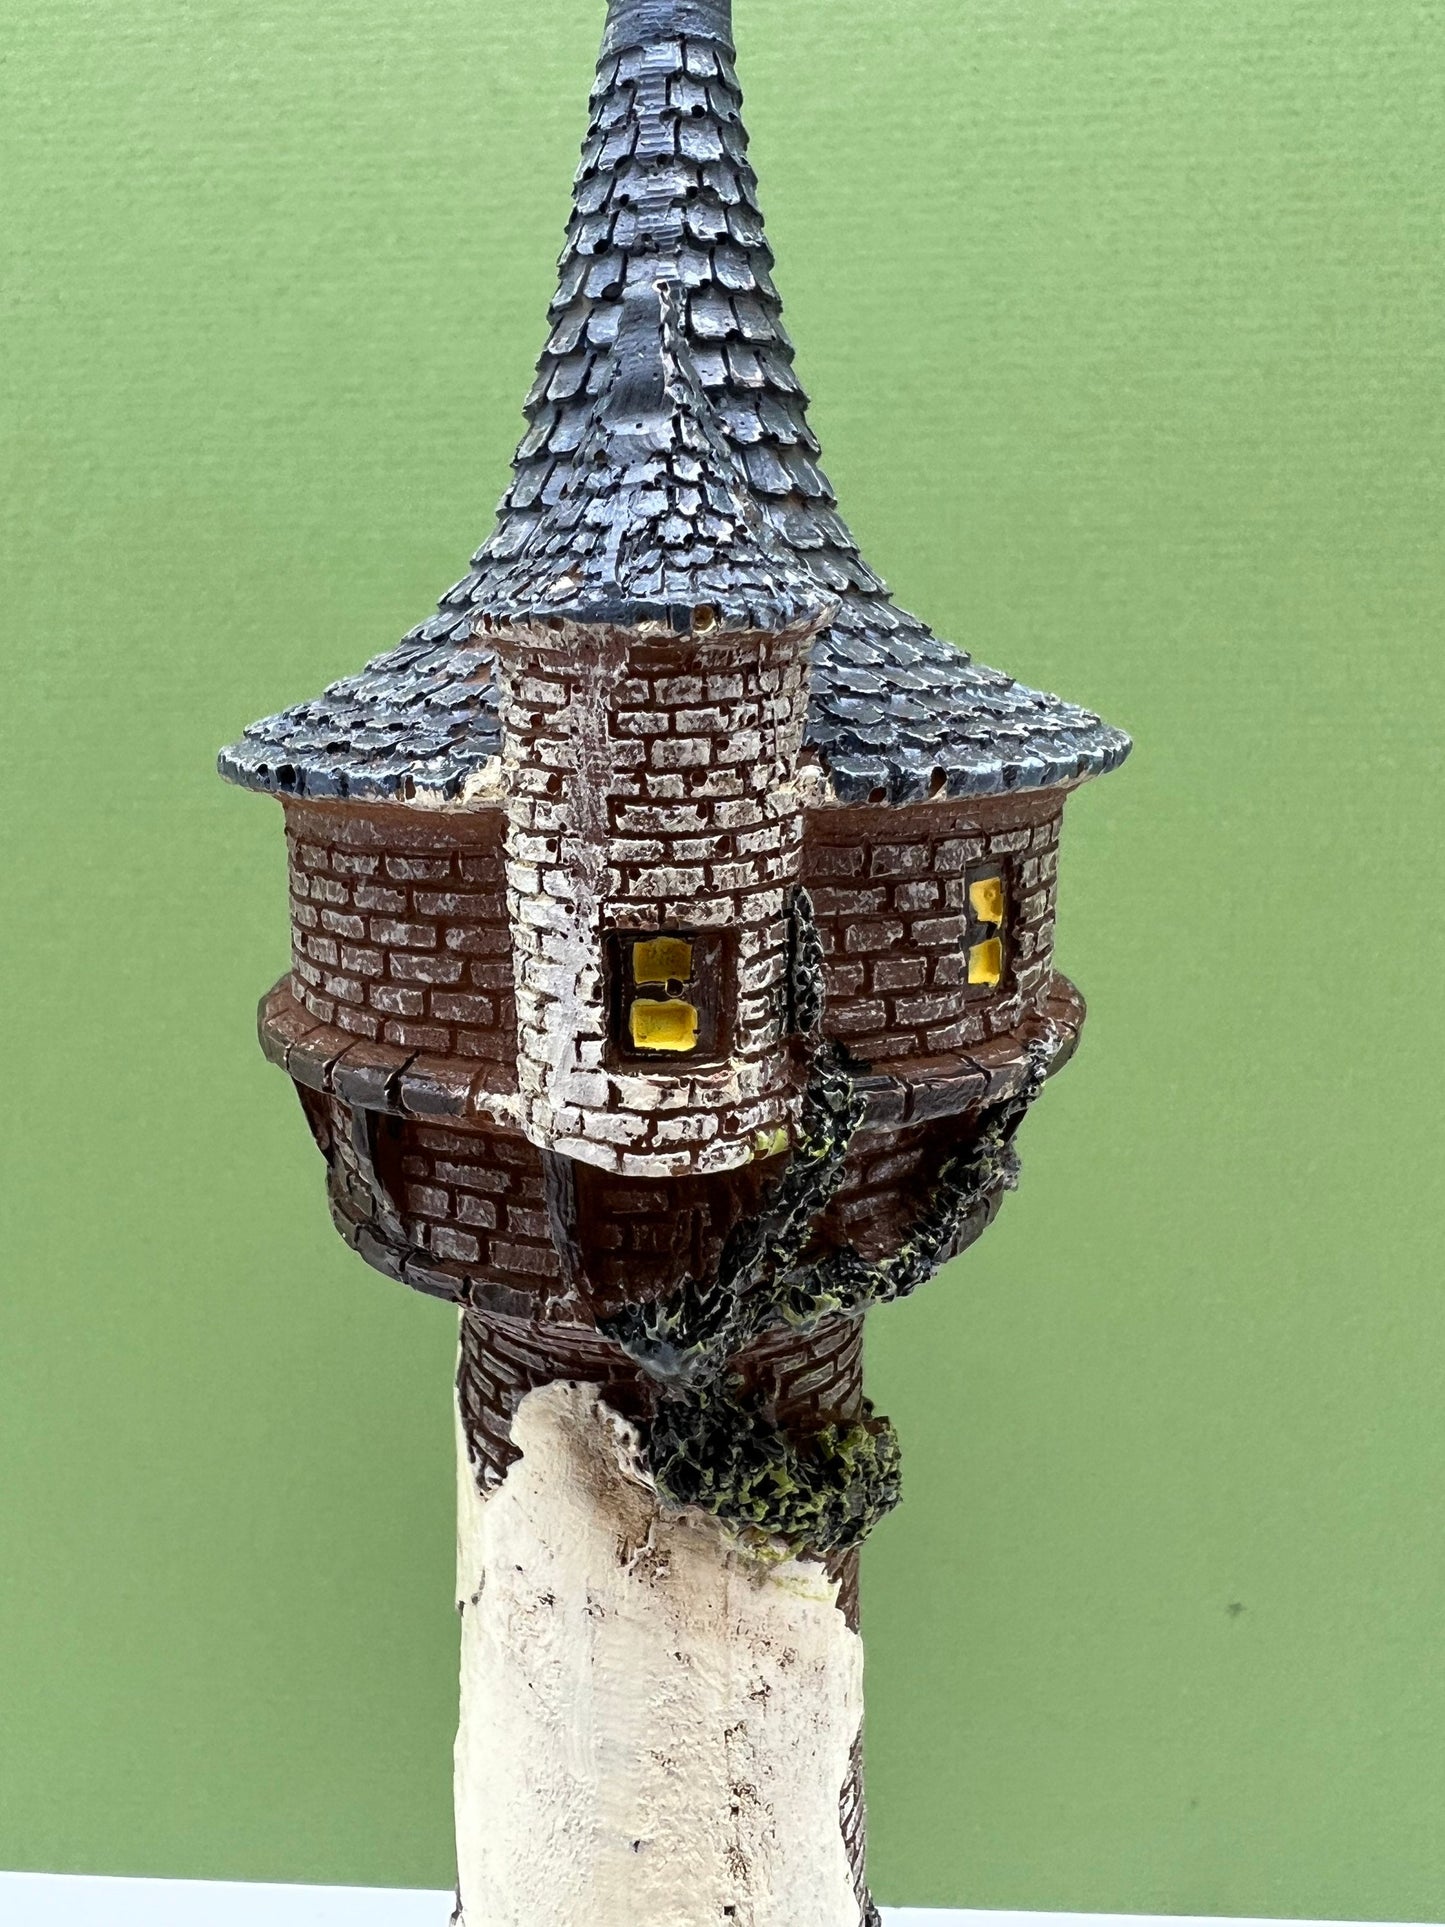 Fairy Tale Castle House